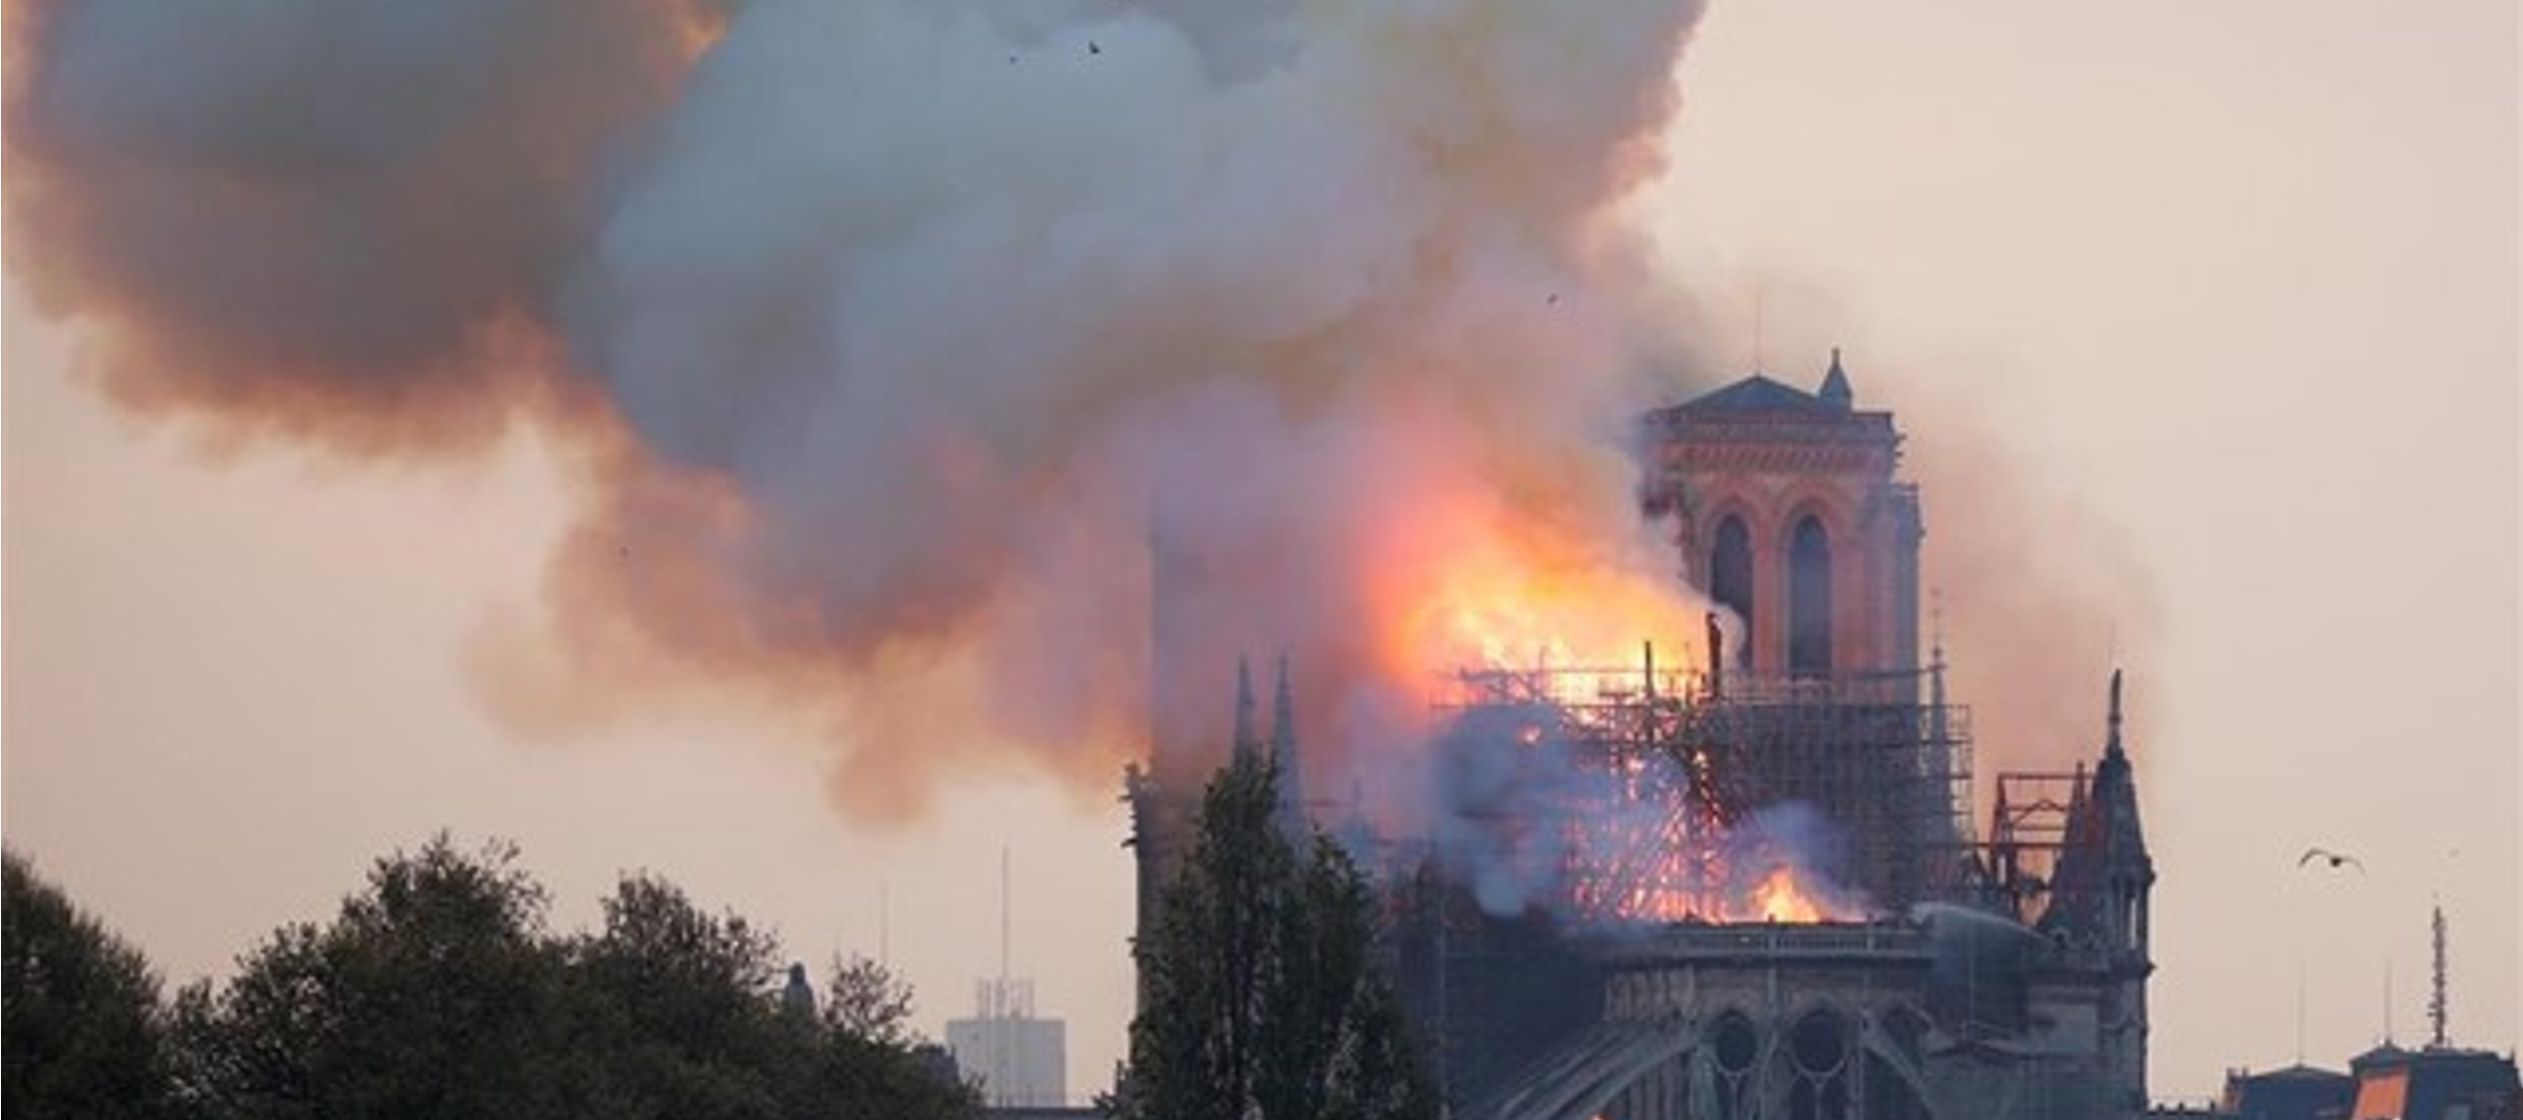 "Inmensa emoción por el dramático incendio de la catedral de Notre Dame,...